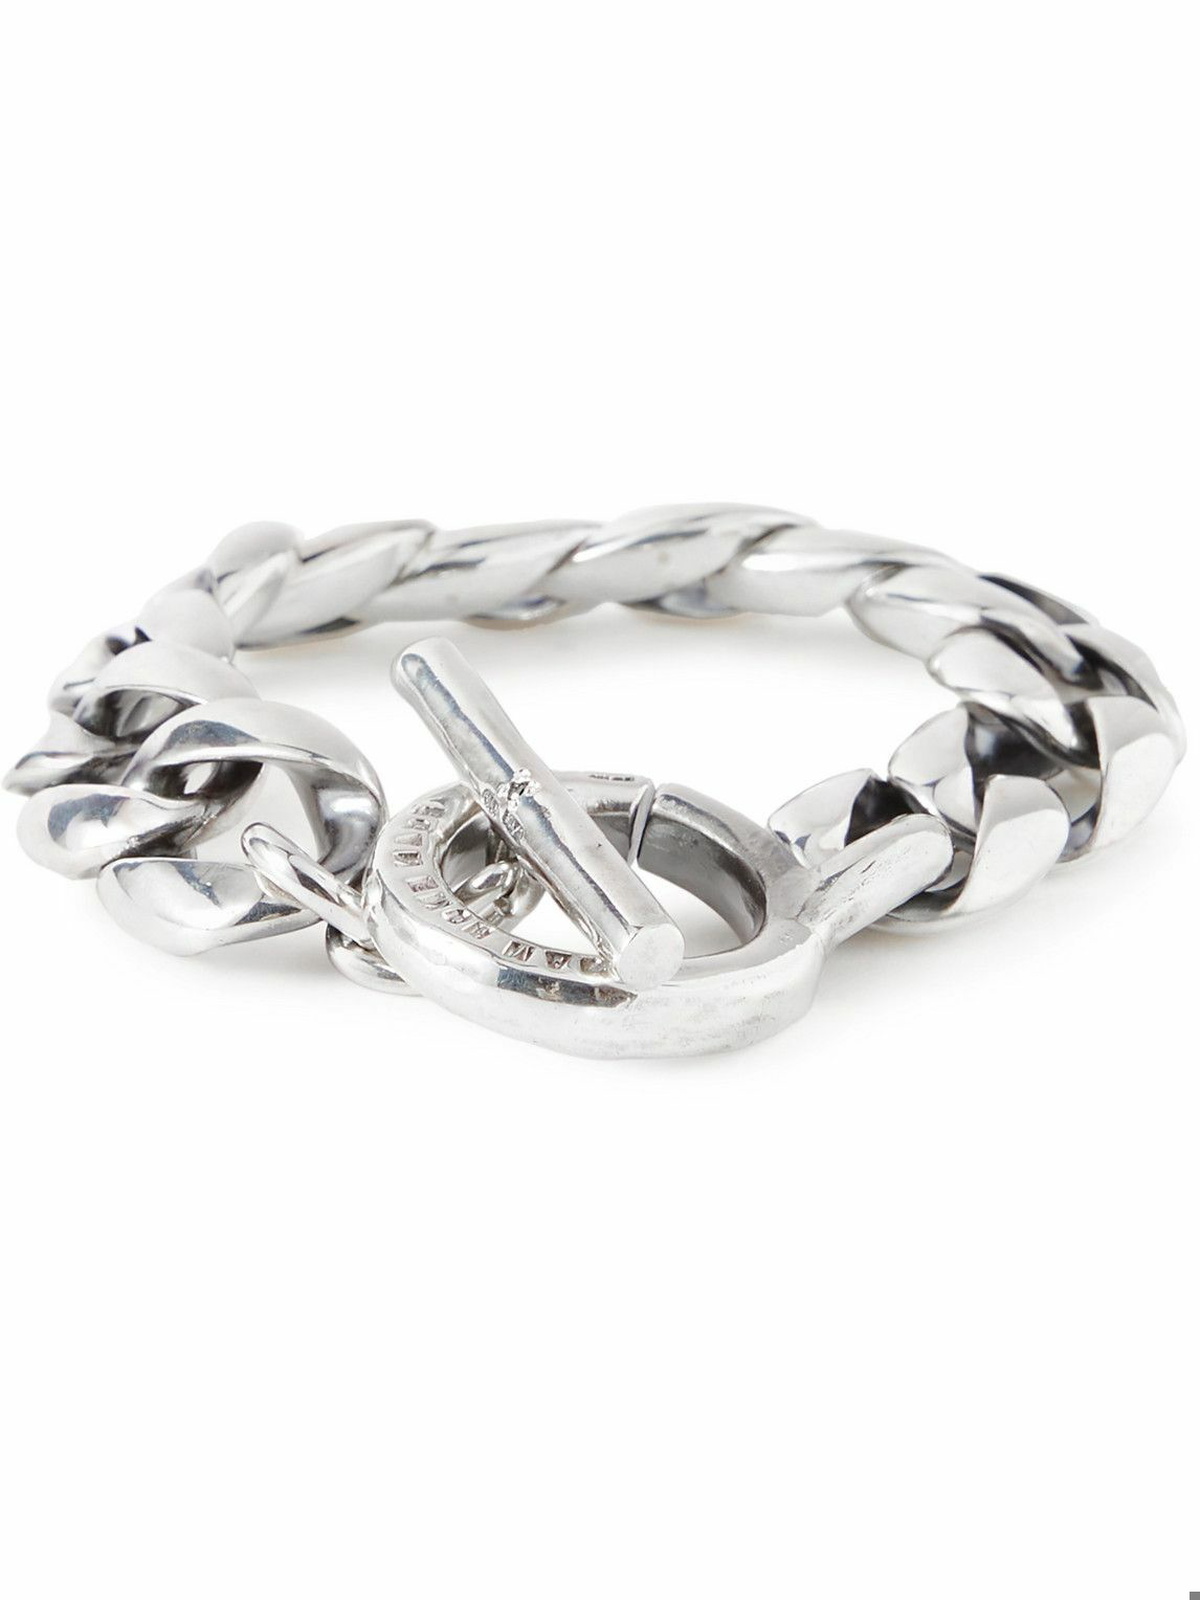 Jam Homemade - Silver Diamond Chain Bracelet - Silver Jam Homemade